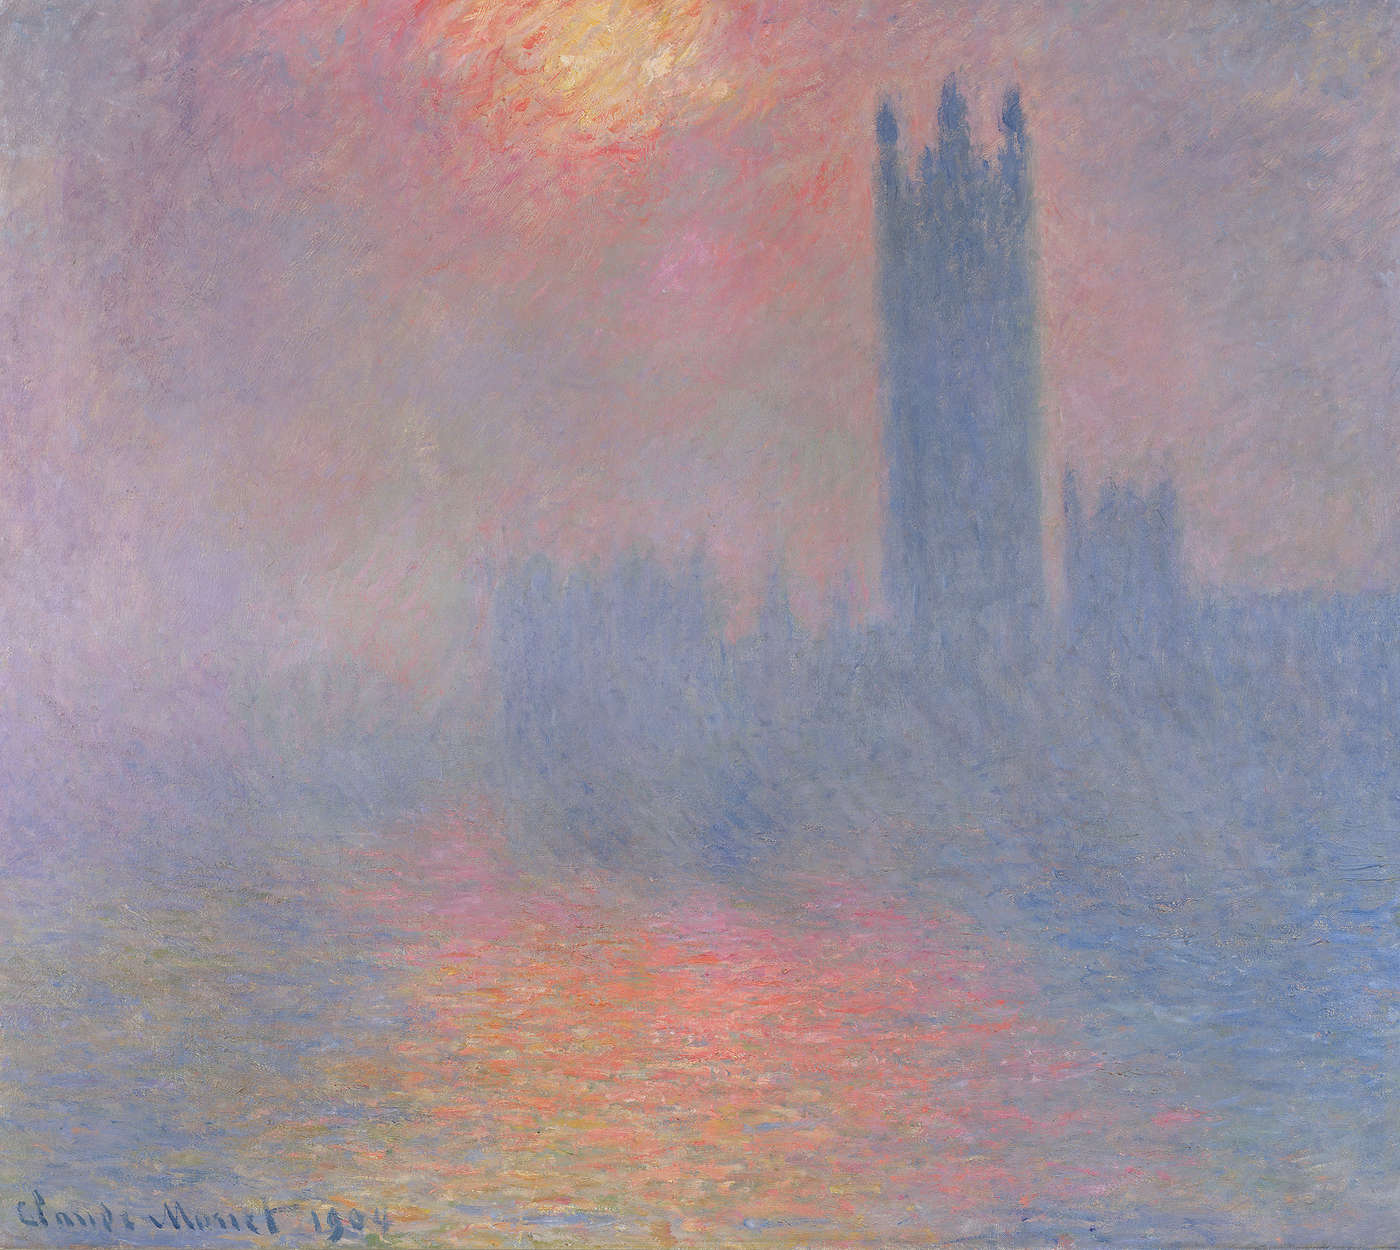             Fototapete "Das Parlament London mit der Sonne die durch den Nebel bricht" von Claude Monet
        